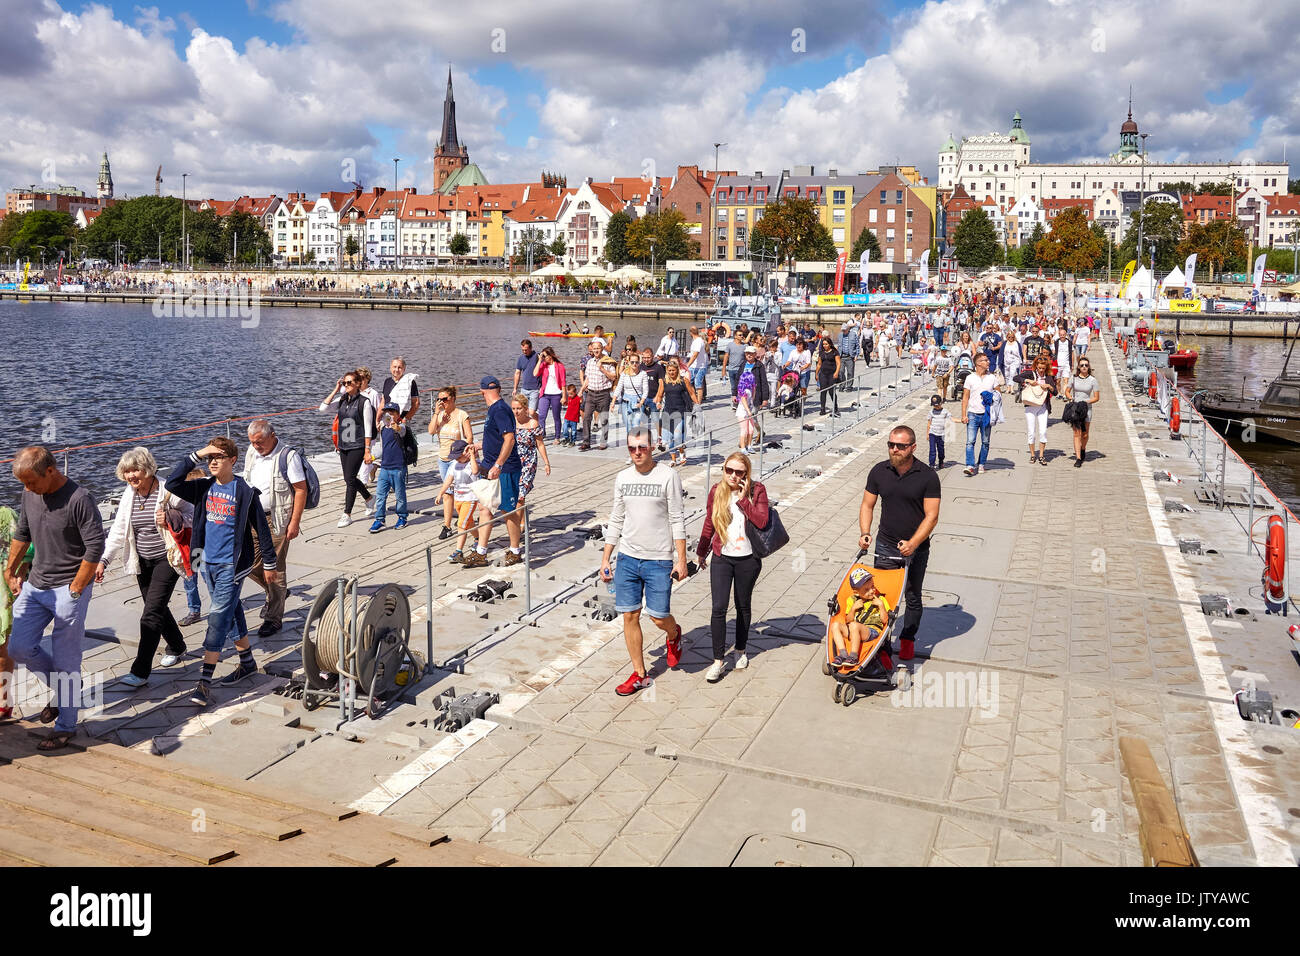 Szczecin, Pologne - Août 06, 2017 : Les visiteurs traversent la rivière Oder avec pont flottant militaire pendant la finale de la Tall Ships Races 2017. Banque D'Images